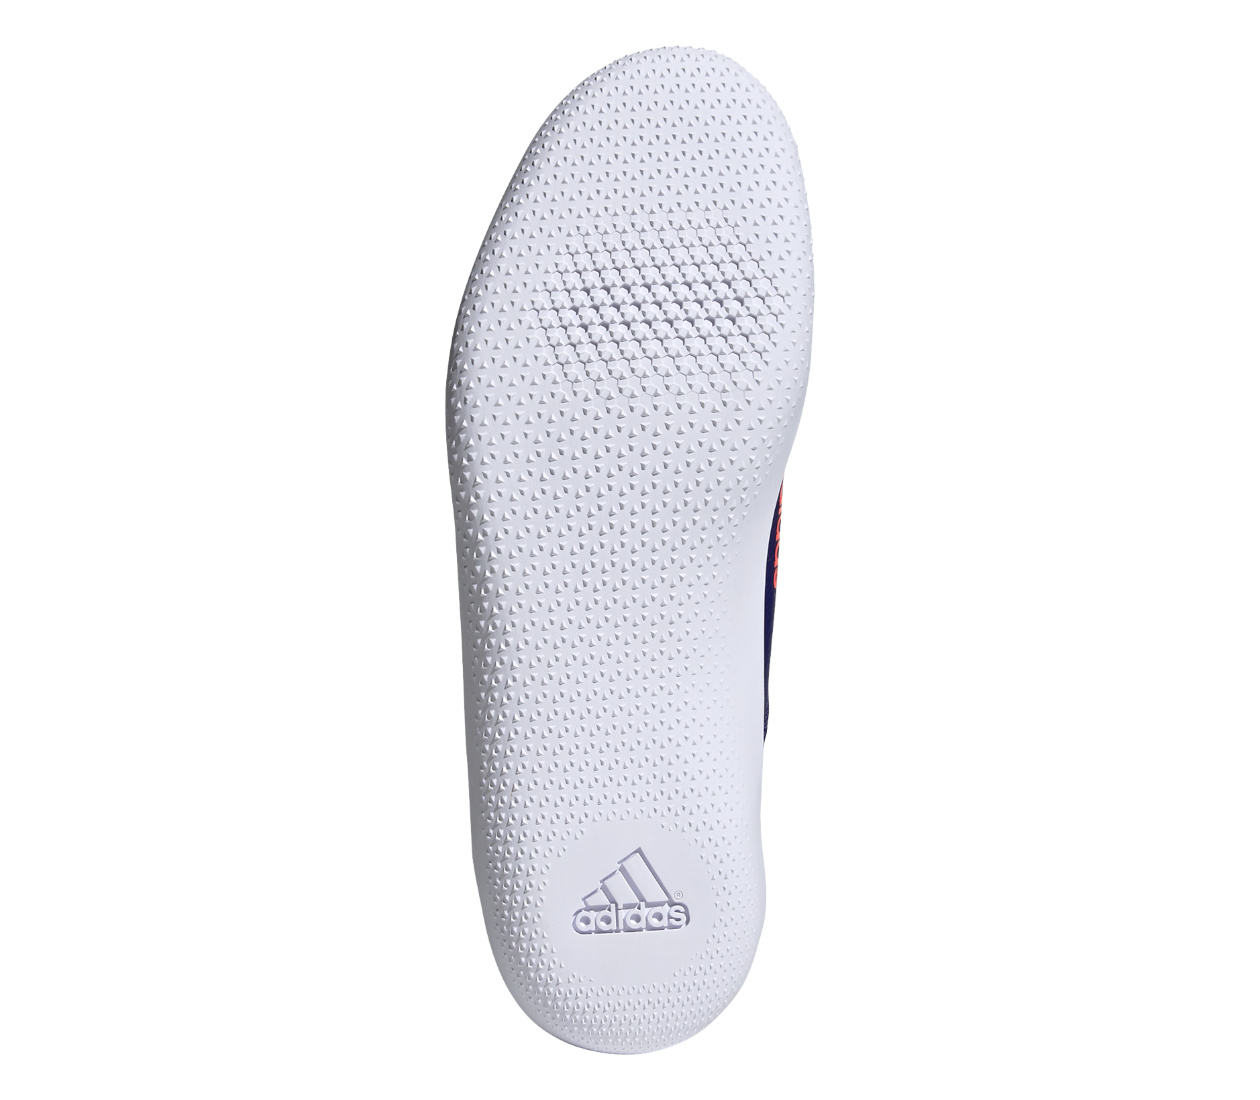 Adidas Throwstar (U) scarpe lancio del disco e del martello | LBM Sport